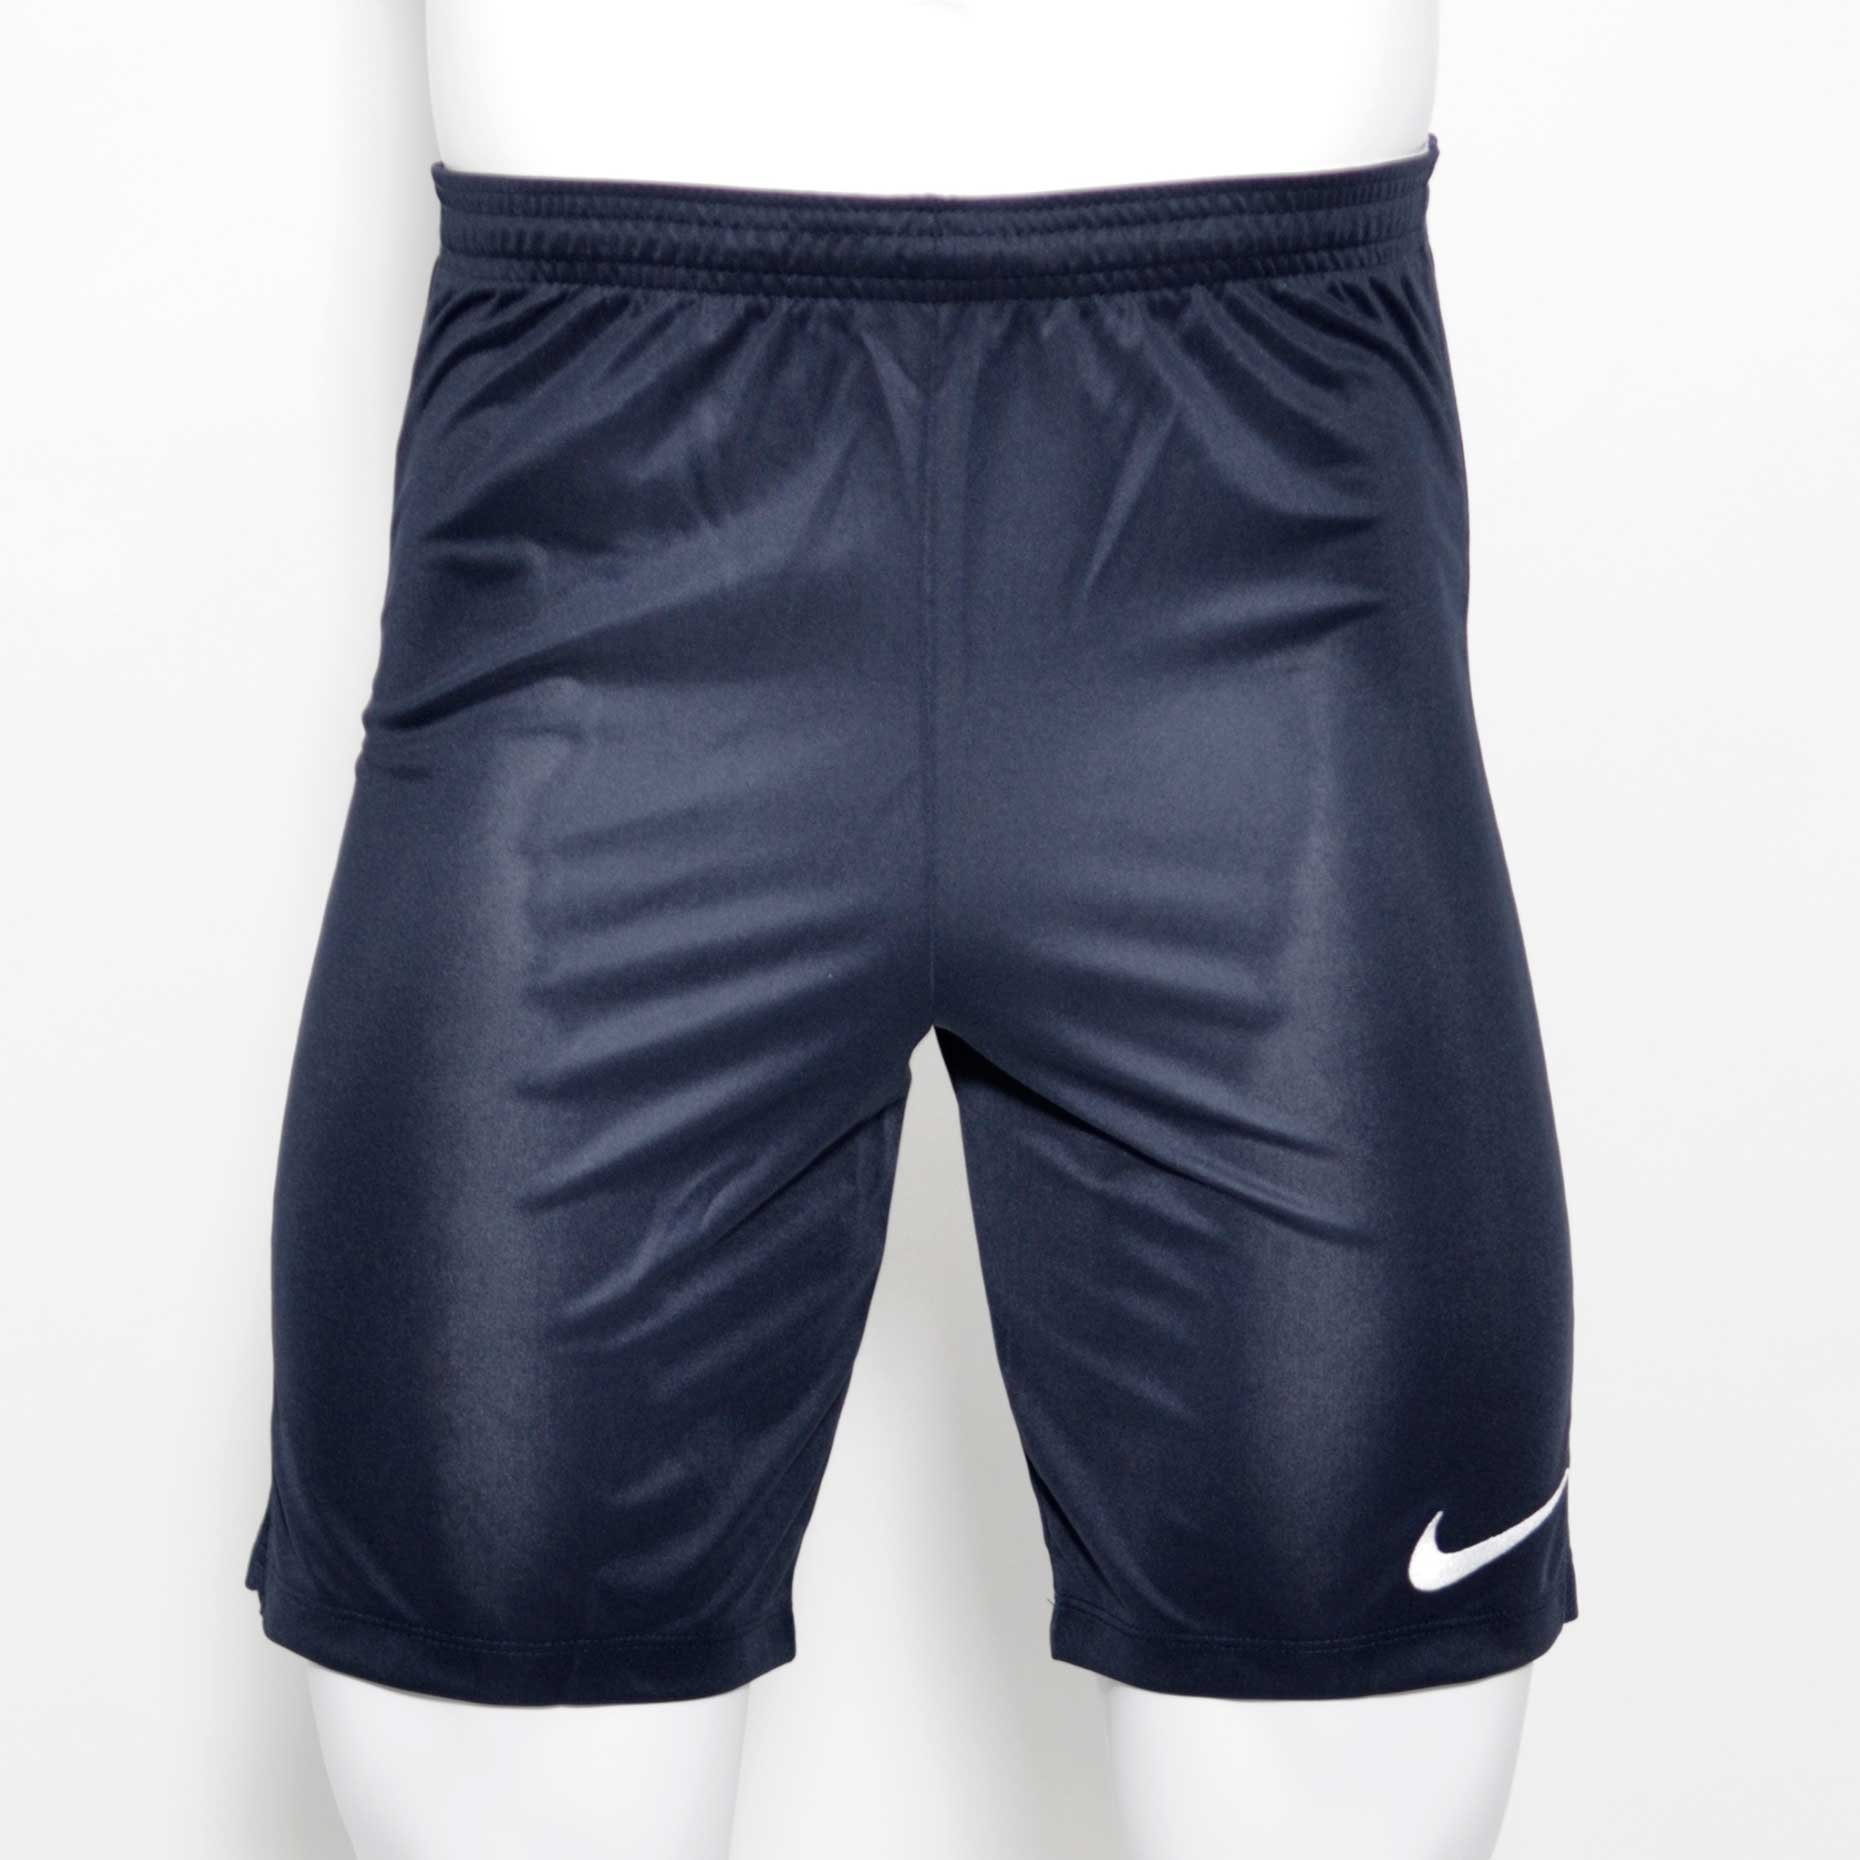 Шорты игровые Nike Dry Academy 18 Football Shorts